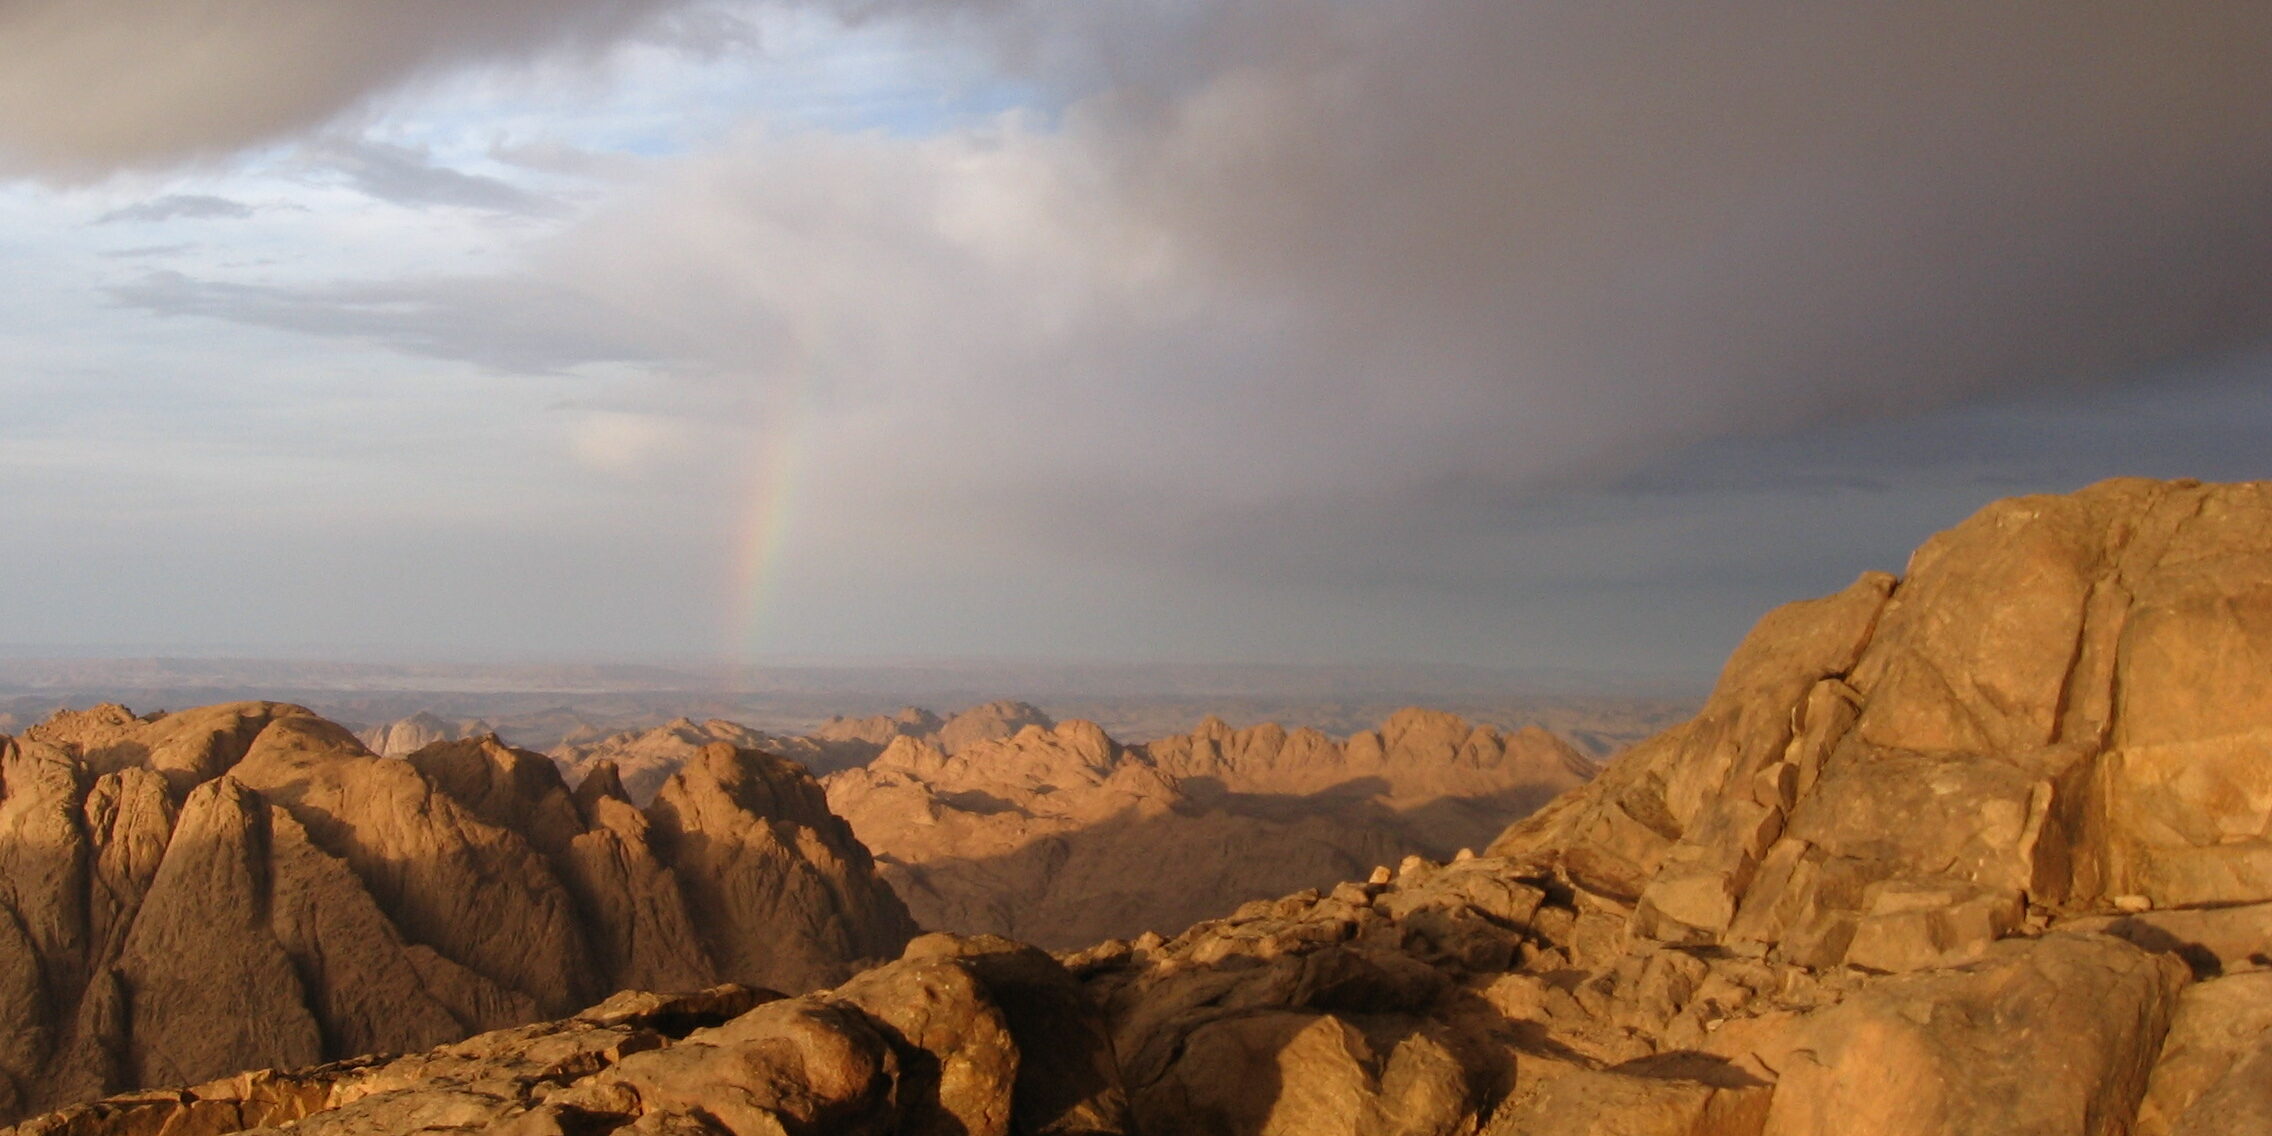 image of Mount Sinai